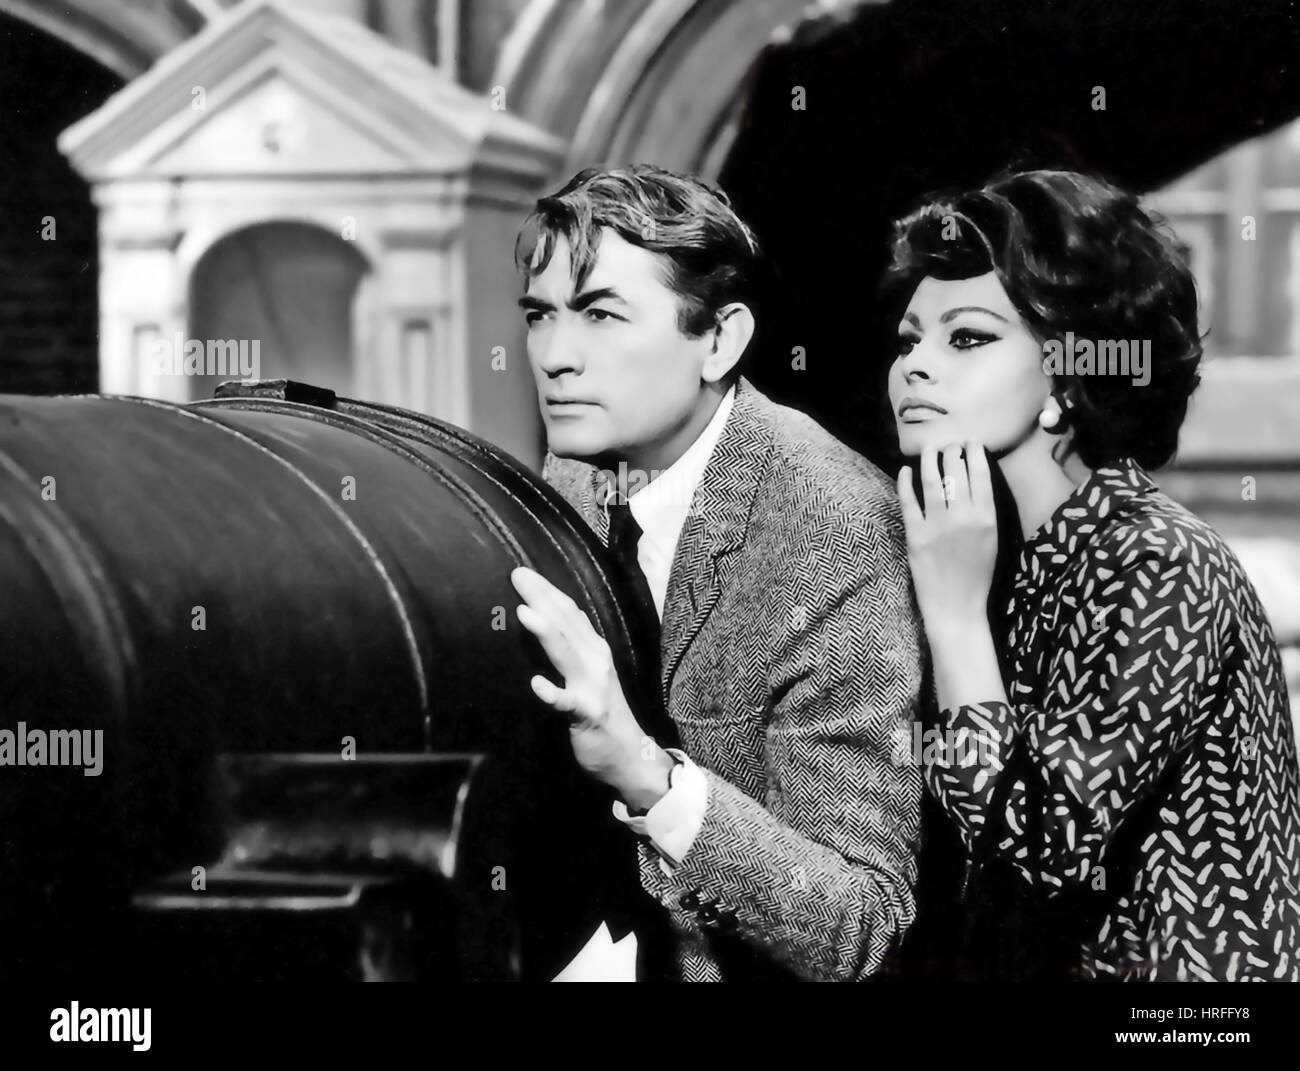 ARABESQUE 1966 Universal Pictures film con Gregory Peck e Sophia Loren Foto Stock